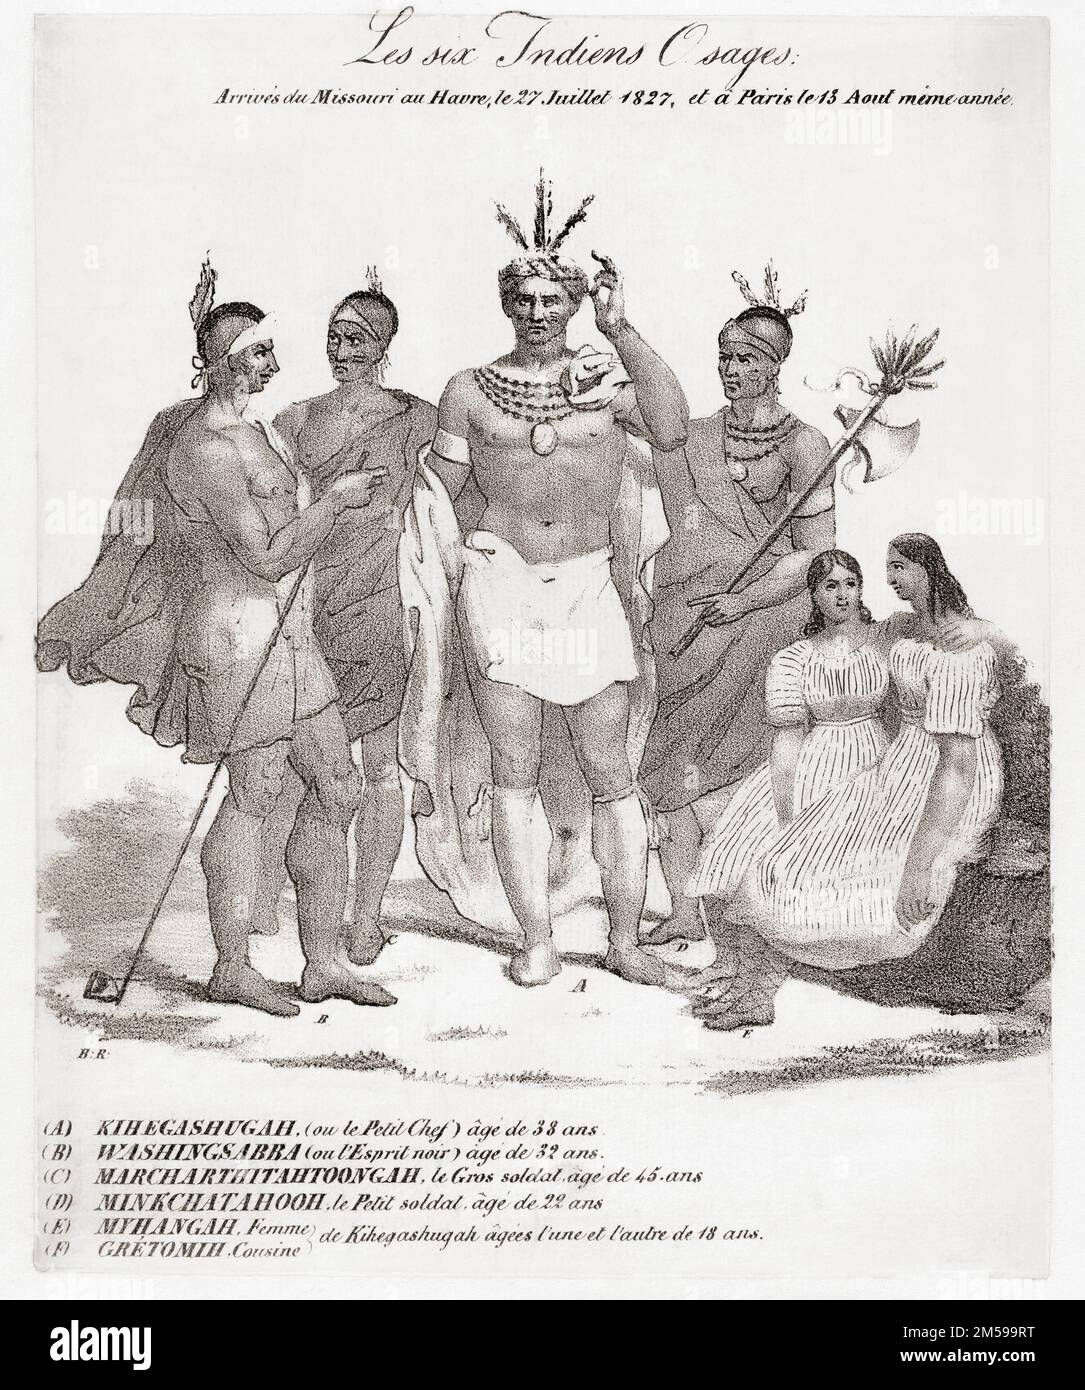 1827 reisten sechs Mitglieder des Osage-Stammes nach Frankreich. Durch den Buchstaben unter ihren Namen identifiziert, waren sie Eine Kihegashugah. B Washingsabba. C Marchitahtoongah. D Minchatahoon. E Mohongo. F Gretomih. Nach einem Druck von 1827. Stockfoto